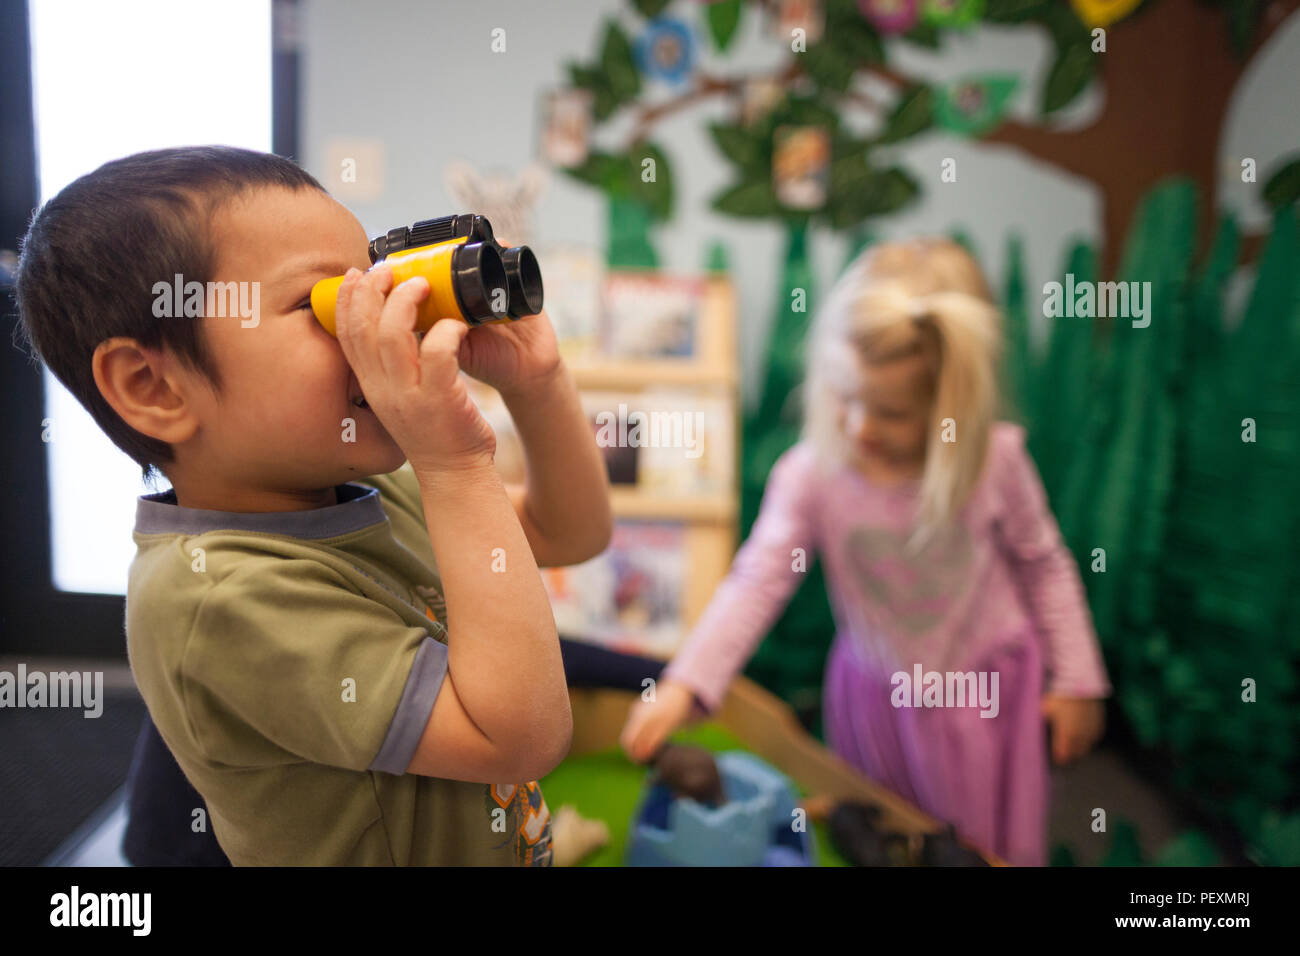 Junge mit Spielzeug Fernglas im Klassenzimmer Stockfoto